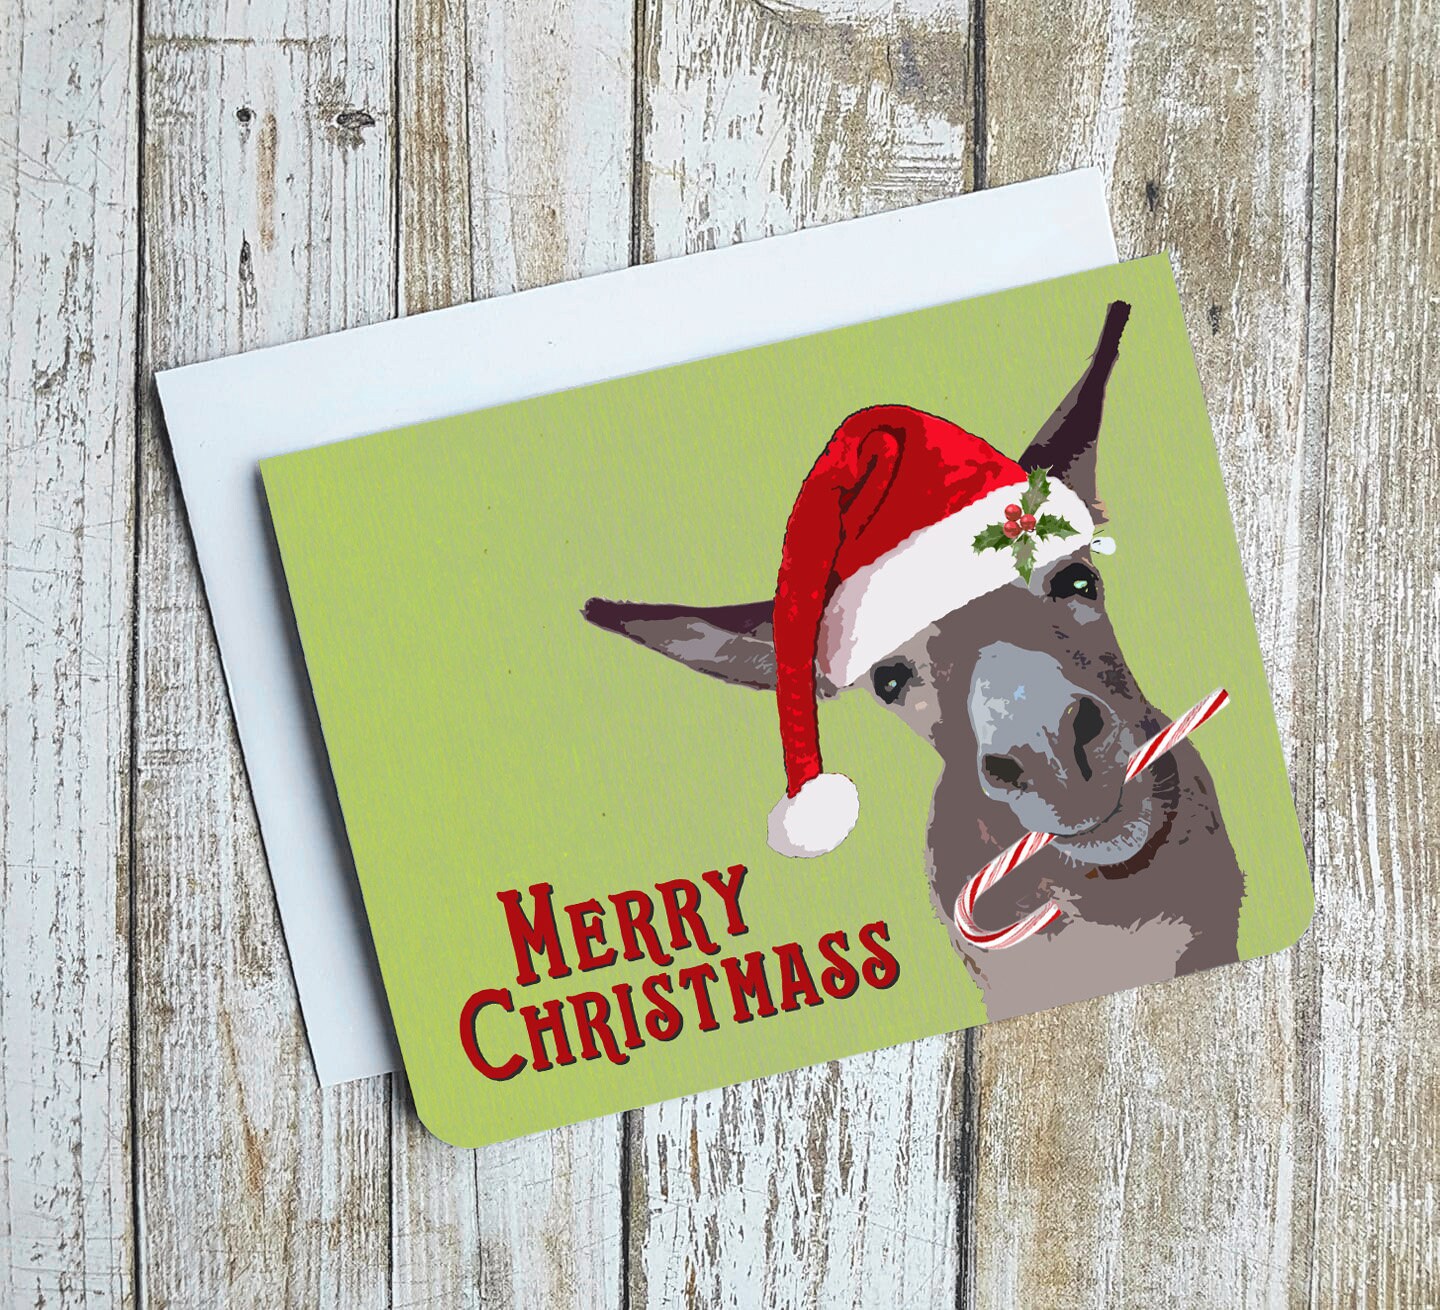 Merry Christm-a-s-s Card